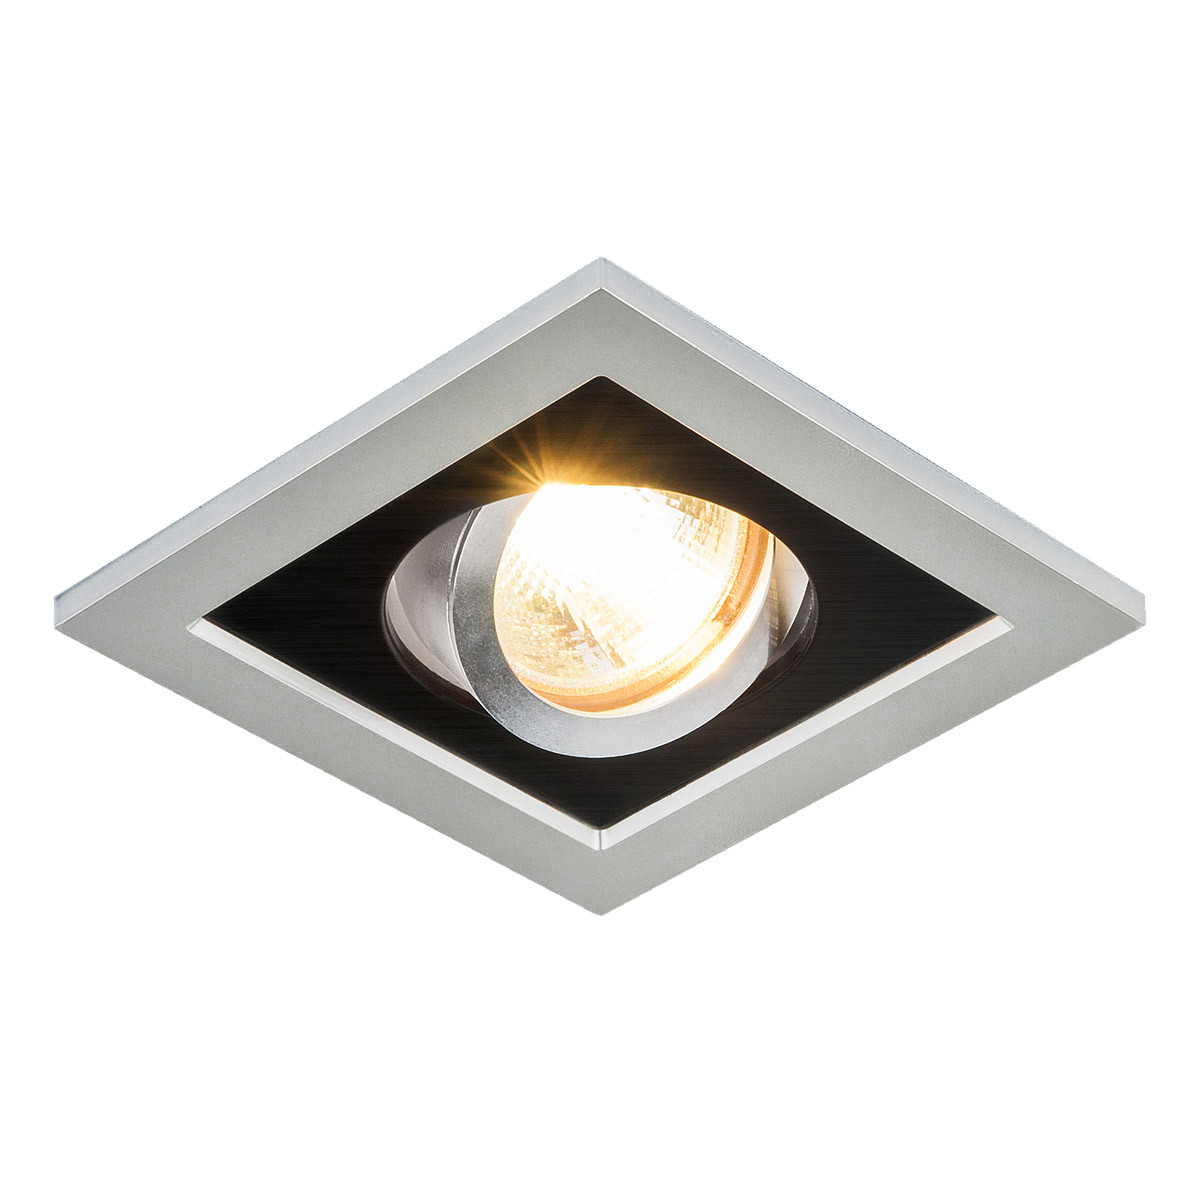 Точечный светильник с поворотным механизмом_x000D_
1031/1 MR16 SL/BK серебро/черный